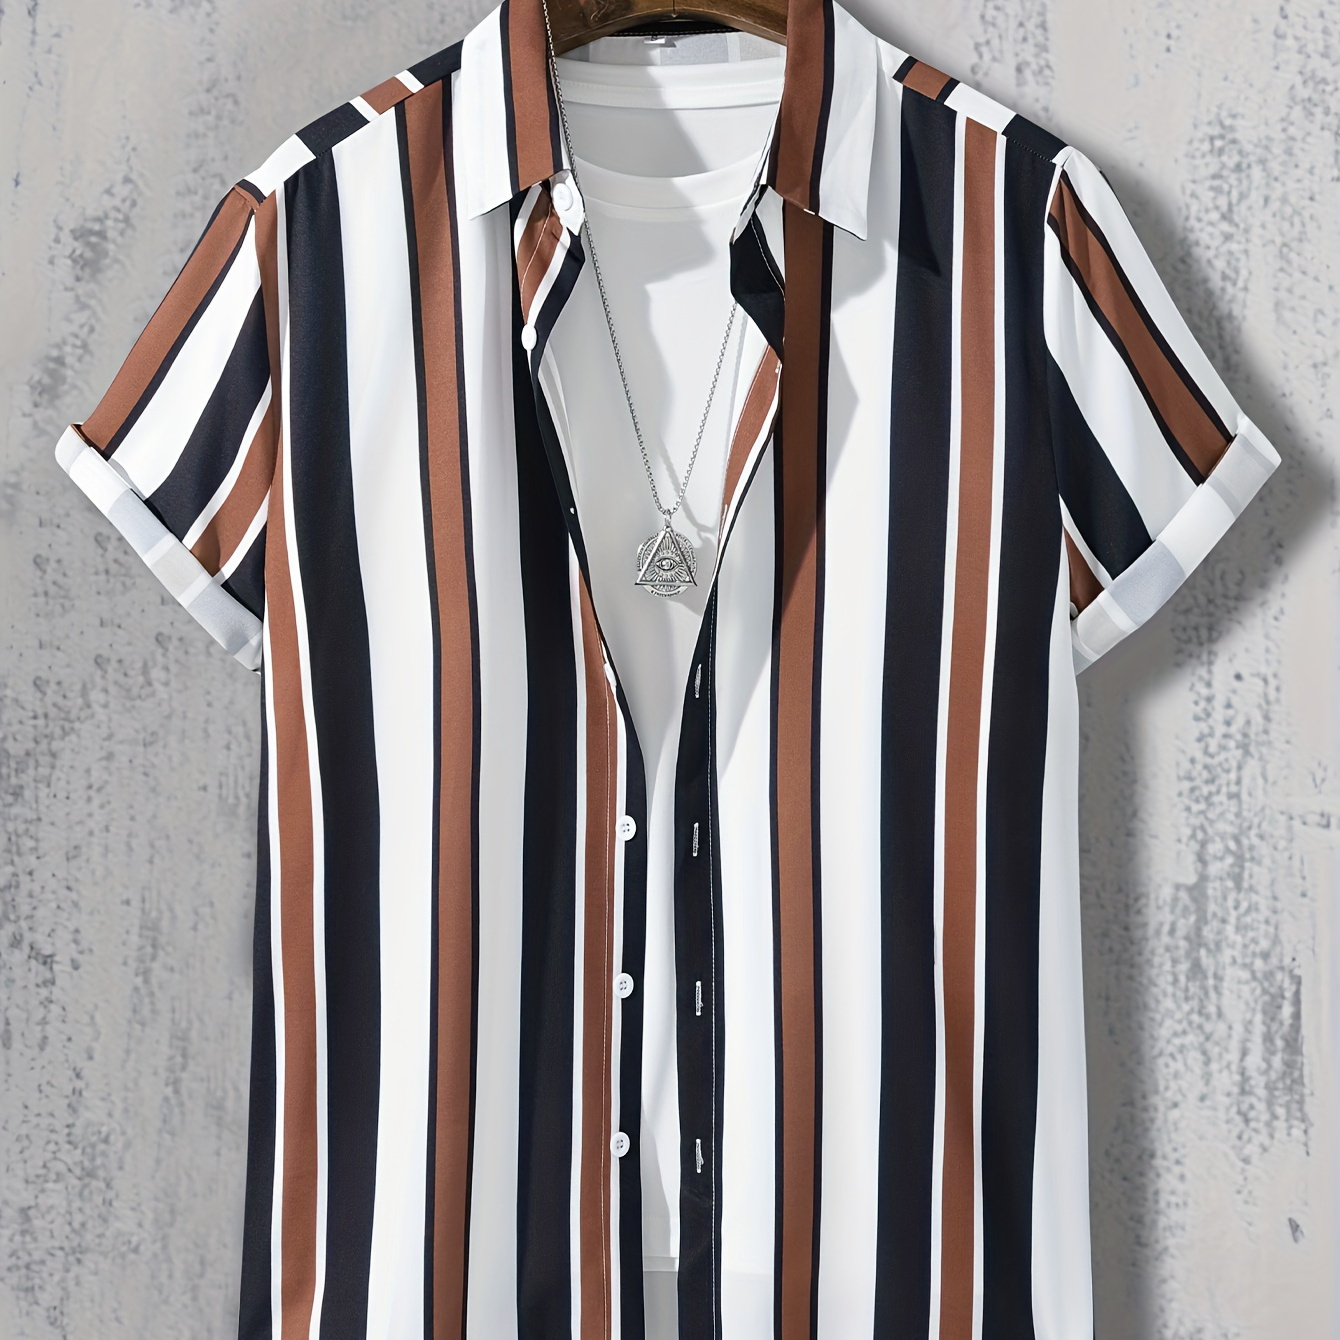 

Trendy Stripe Print Men's Casual Short Sleeve Shirt, Men's Shirt For Summer Vacation Resort, Tops For Men